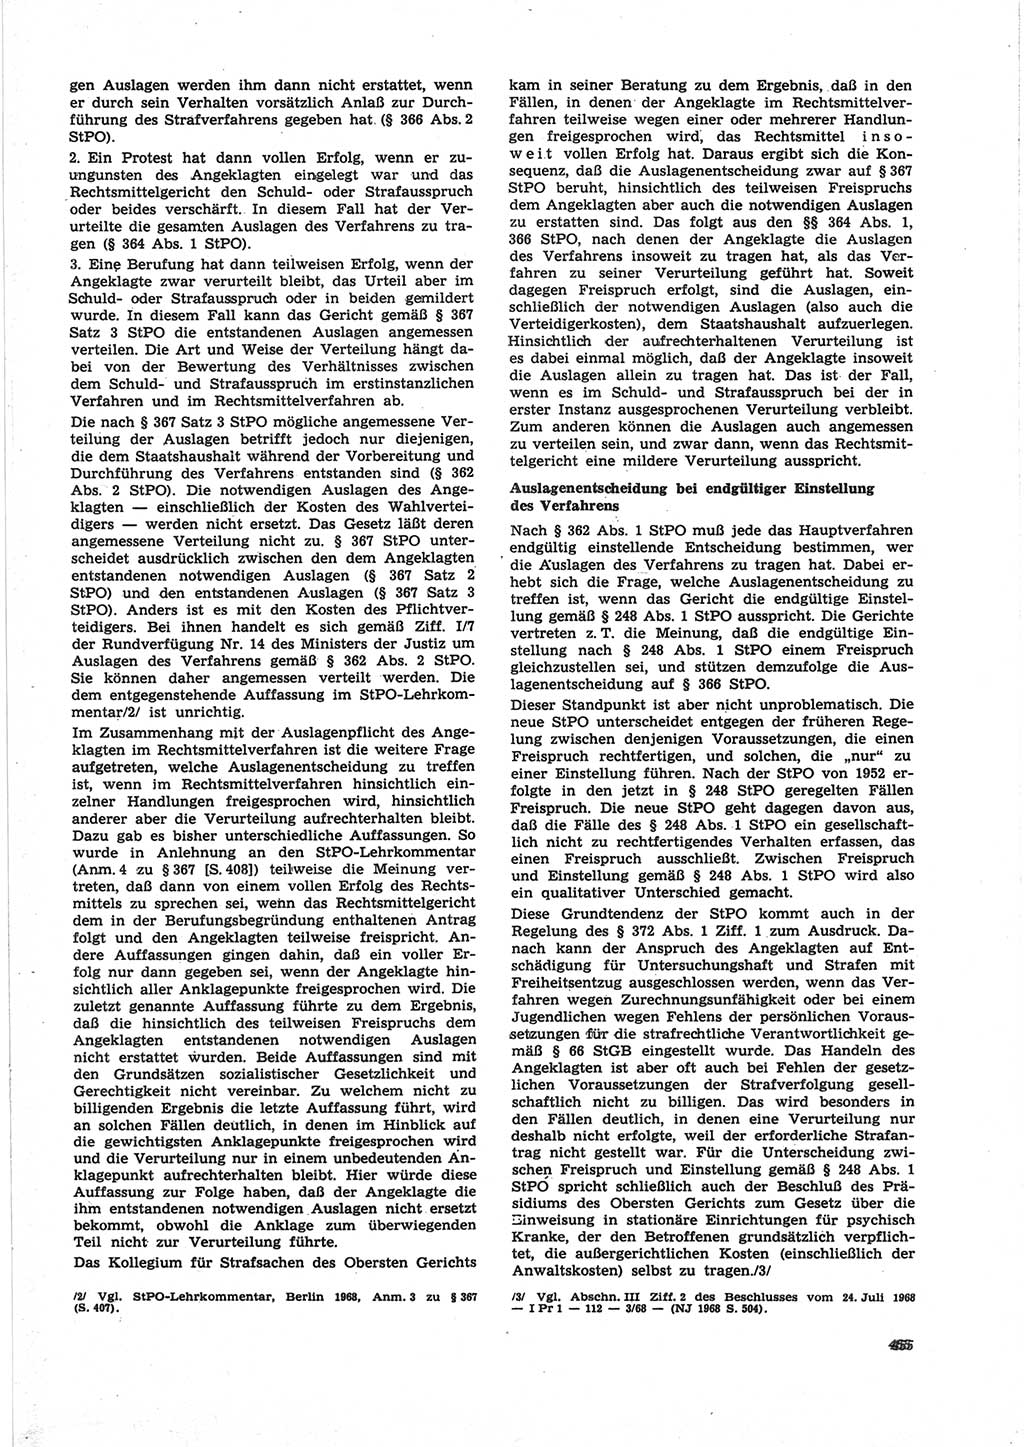 Neue Justiz (NJ), Zeitschrift für Recht und Rechtswissenschaft [Deutsche Demokratische Republik (DDR)], 25. Jahrgang 1971, Seite 455 (NJ DDR 1971, S. 455)